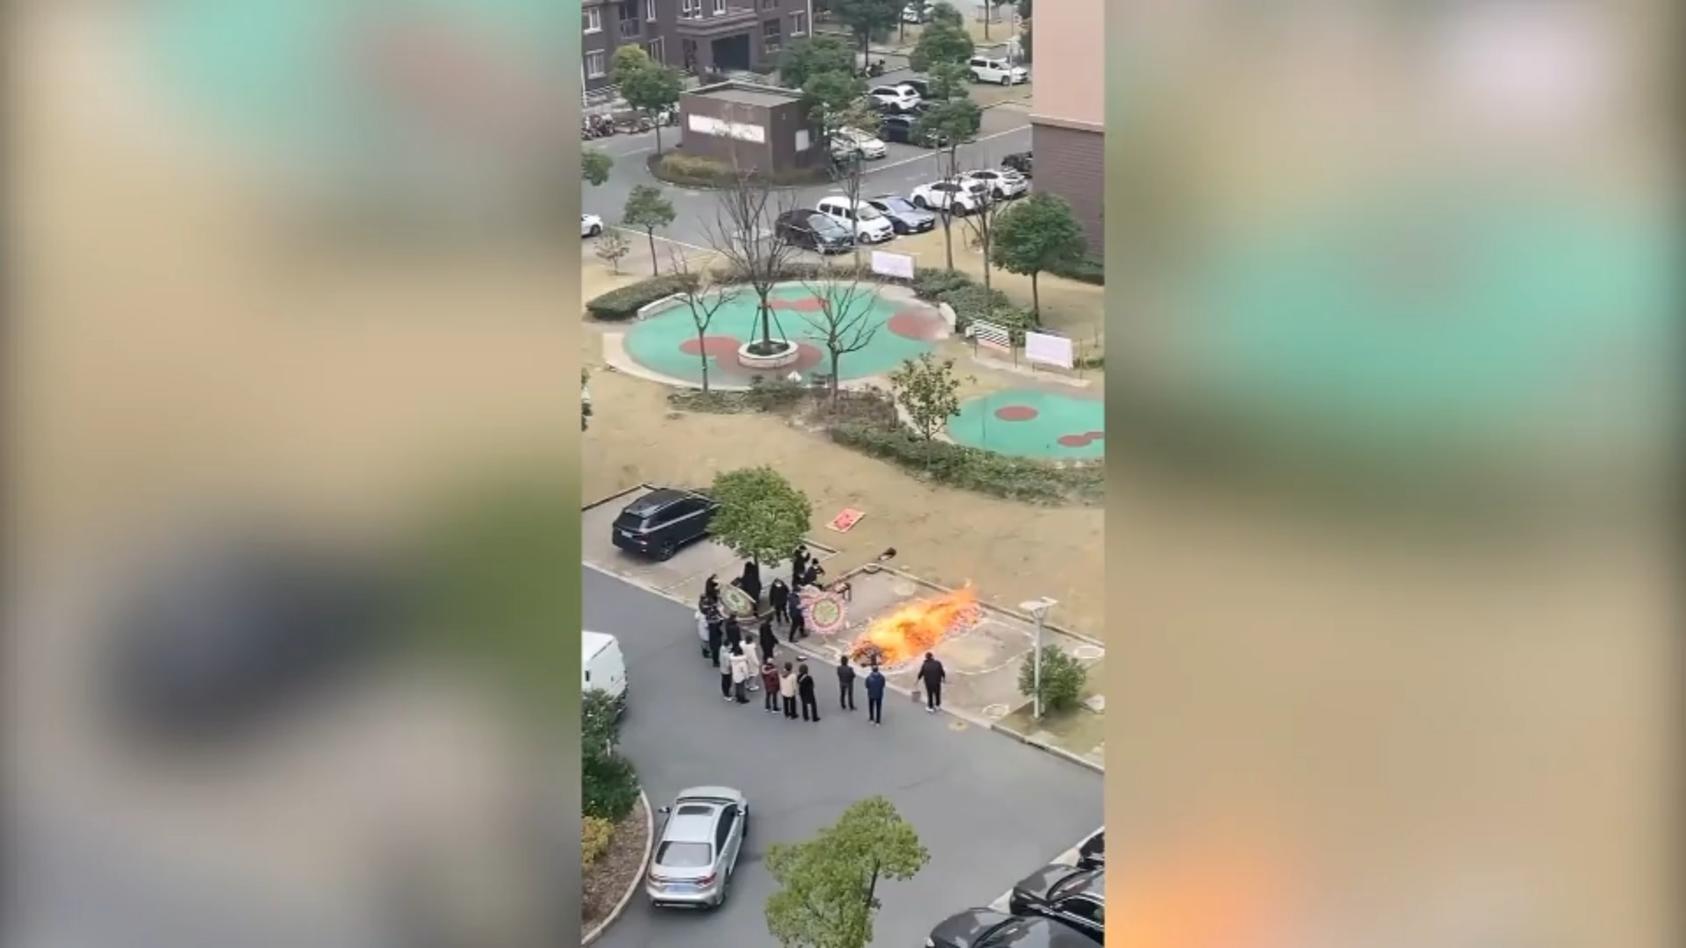 Corona-Tote werden angeblich auf offener Straße verbrannt Schockierende Szenen in China